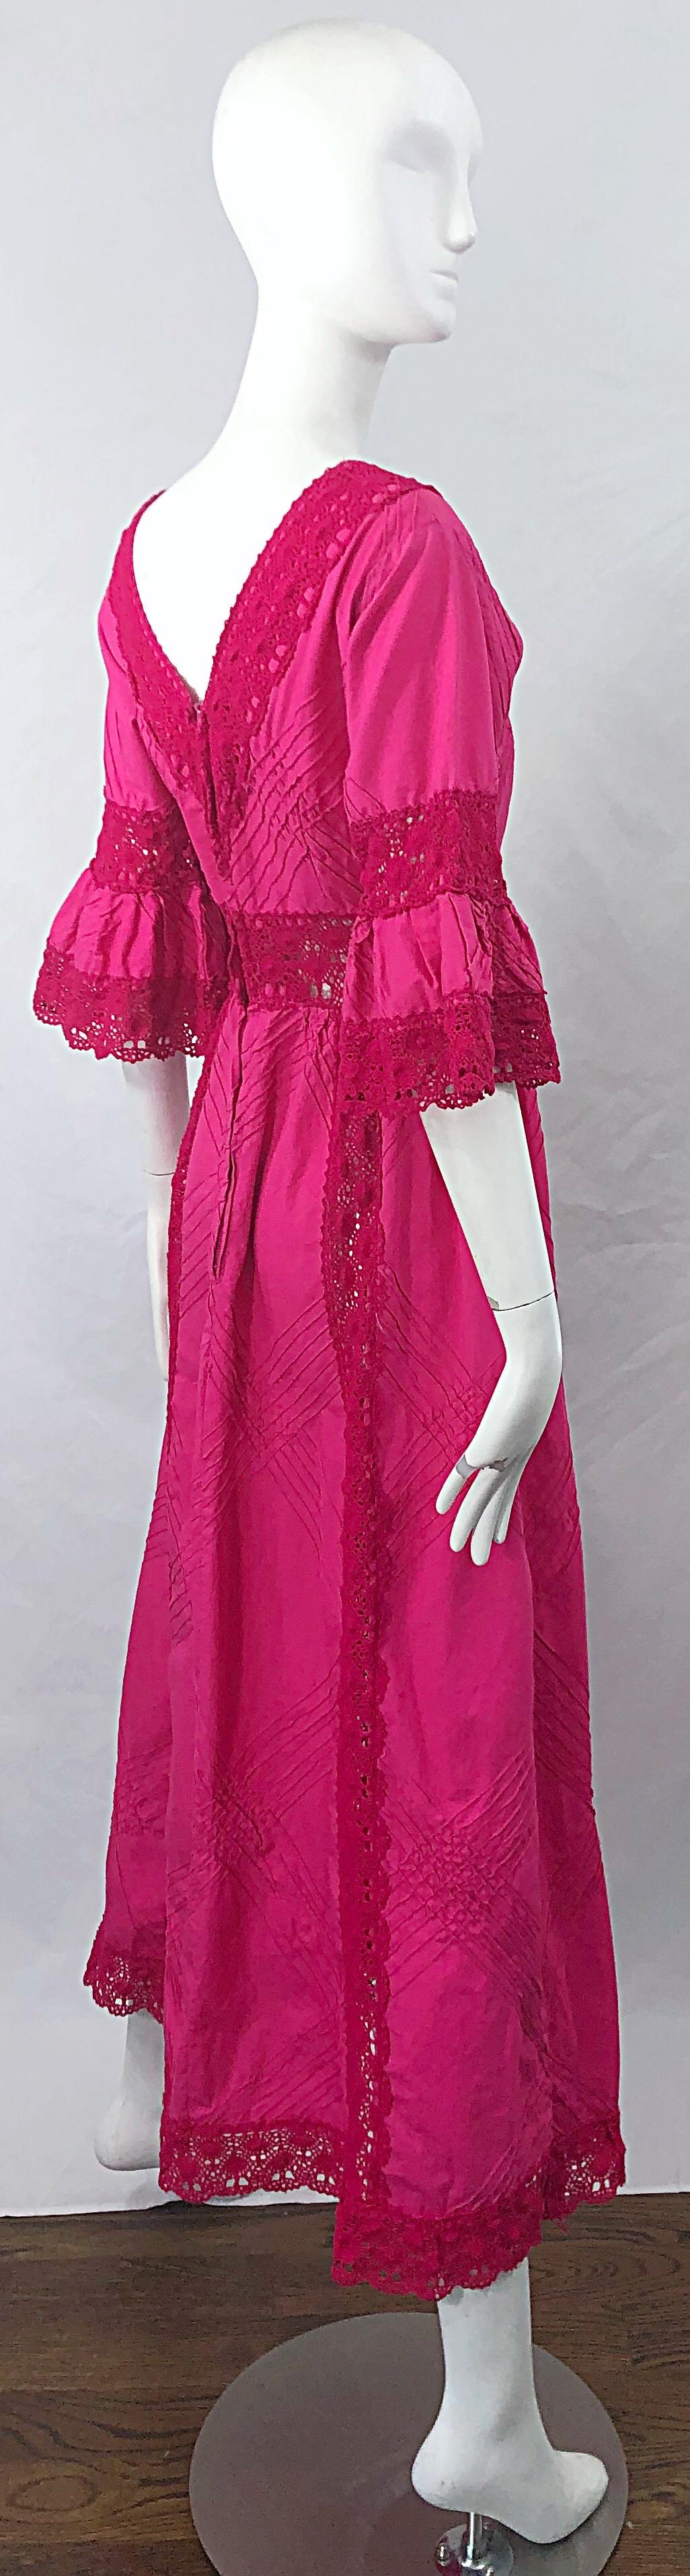 hot pink 70s dress